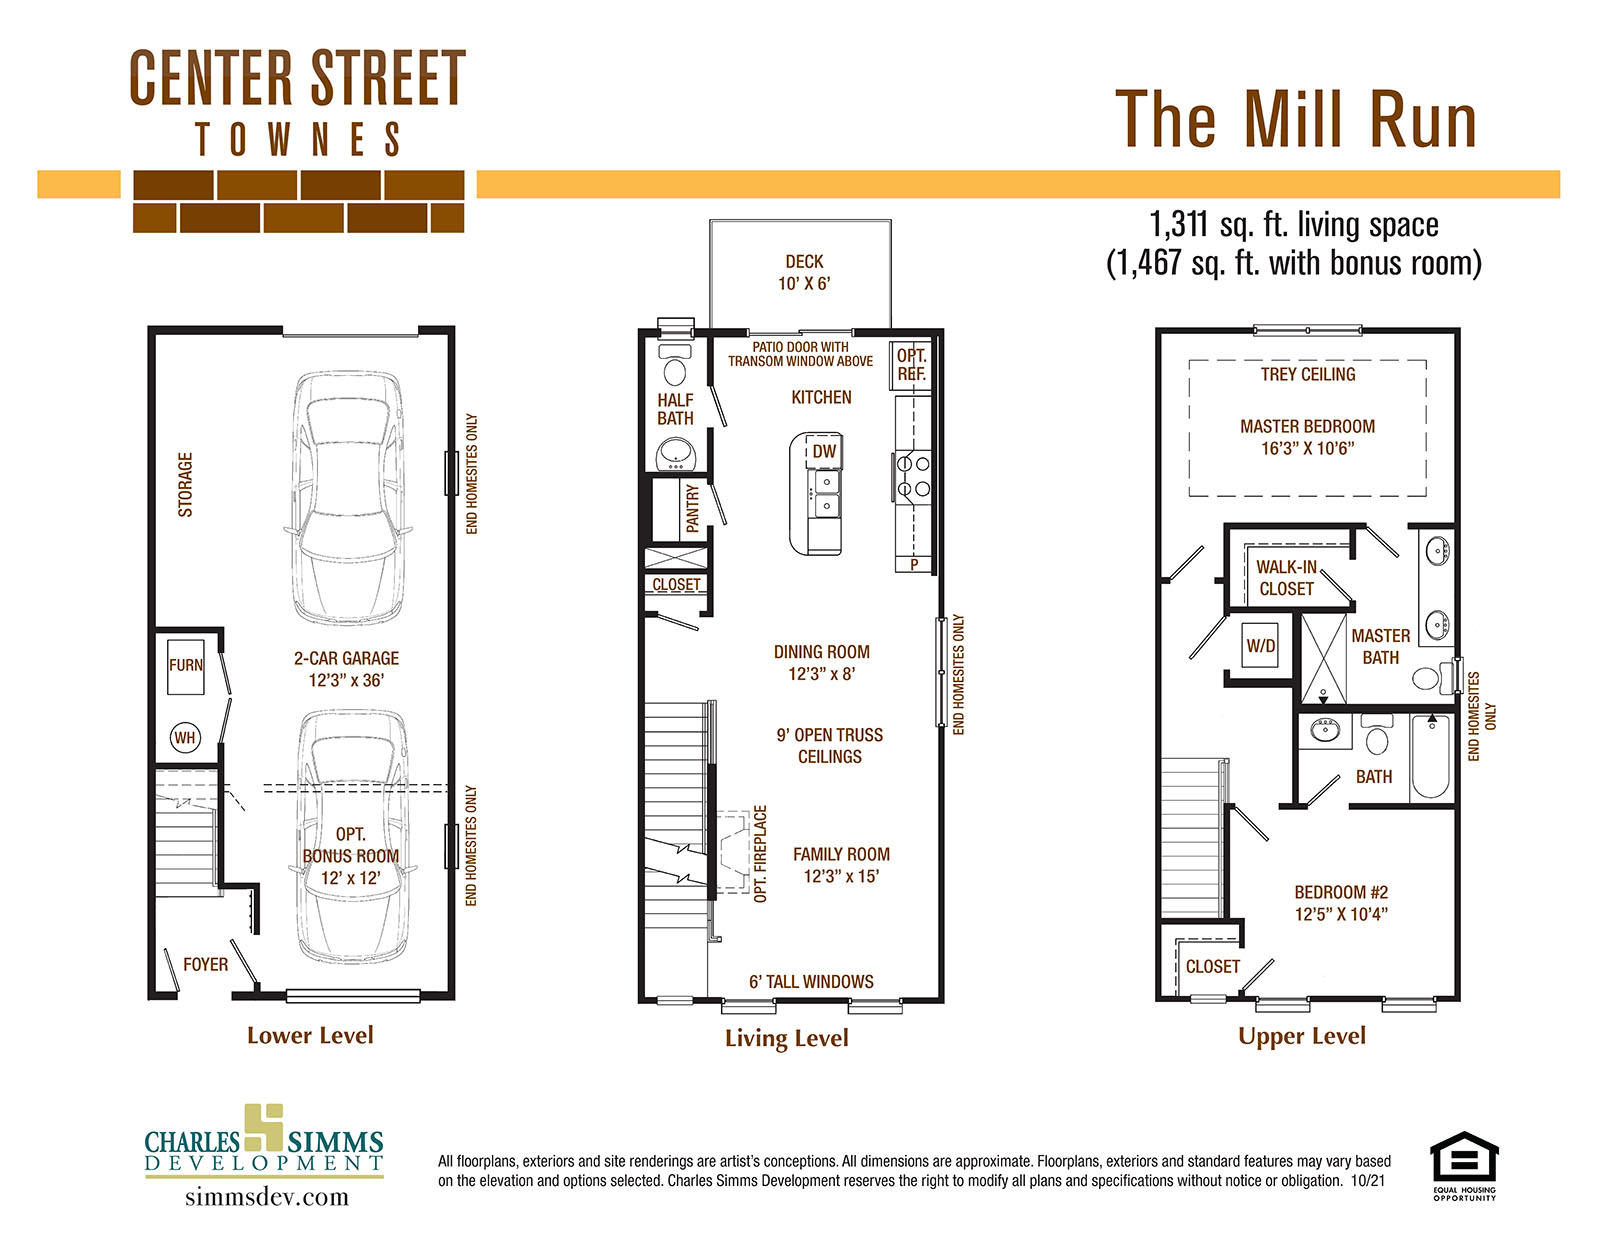 Center Street The Mill Run floorplan